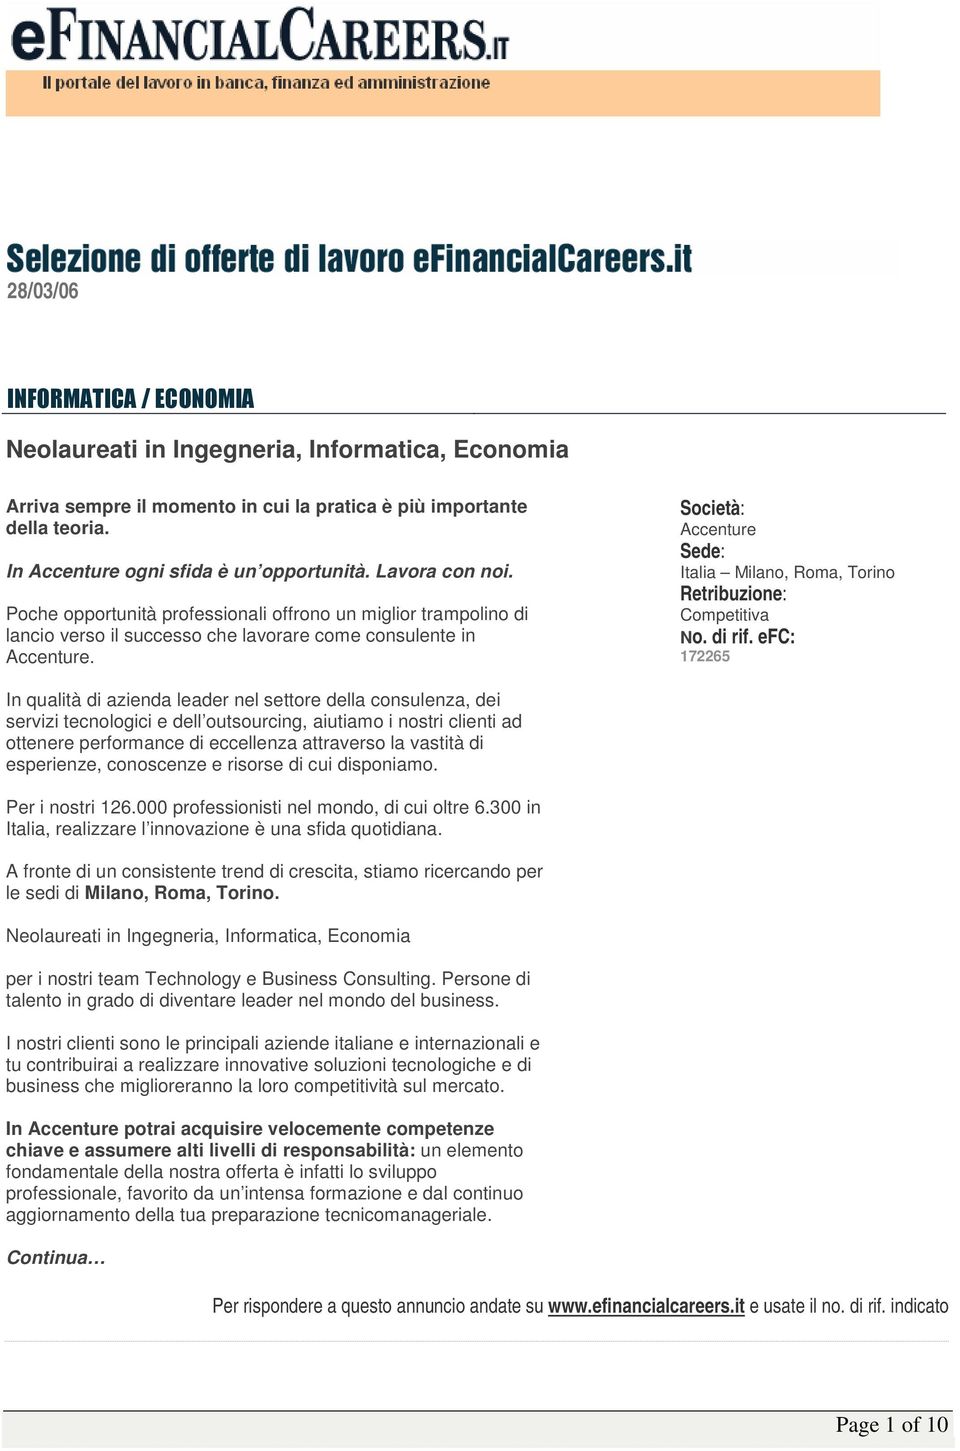 Accenture Italia Milano, Roma, Torino Competitiva 172265 In qualità di azienda leader nel settore della consulenza, dei servizi tecnologici e dell outsourcing, aiutiamo i nostri clienti ad ottenere